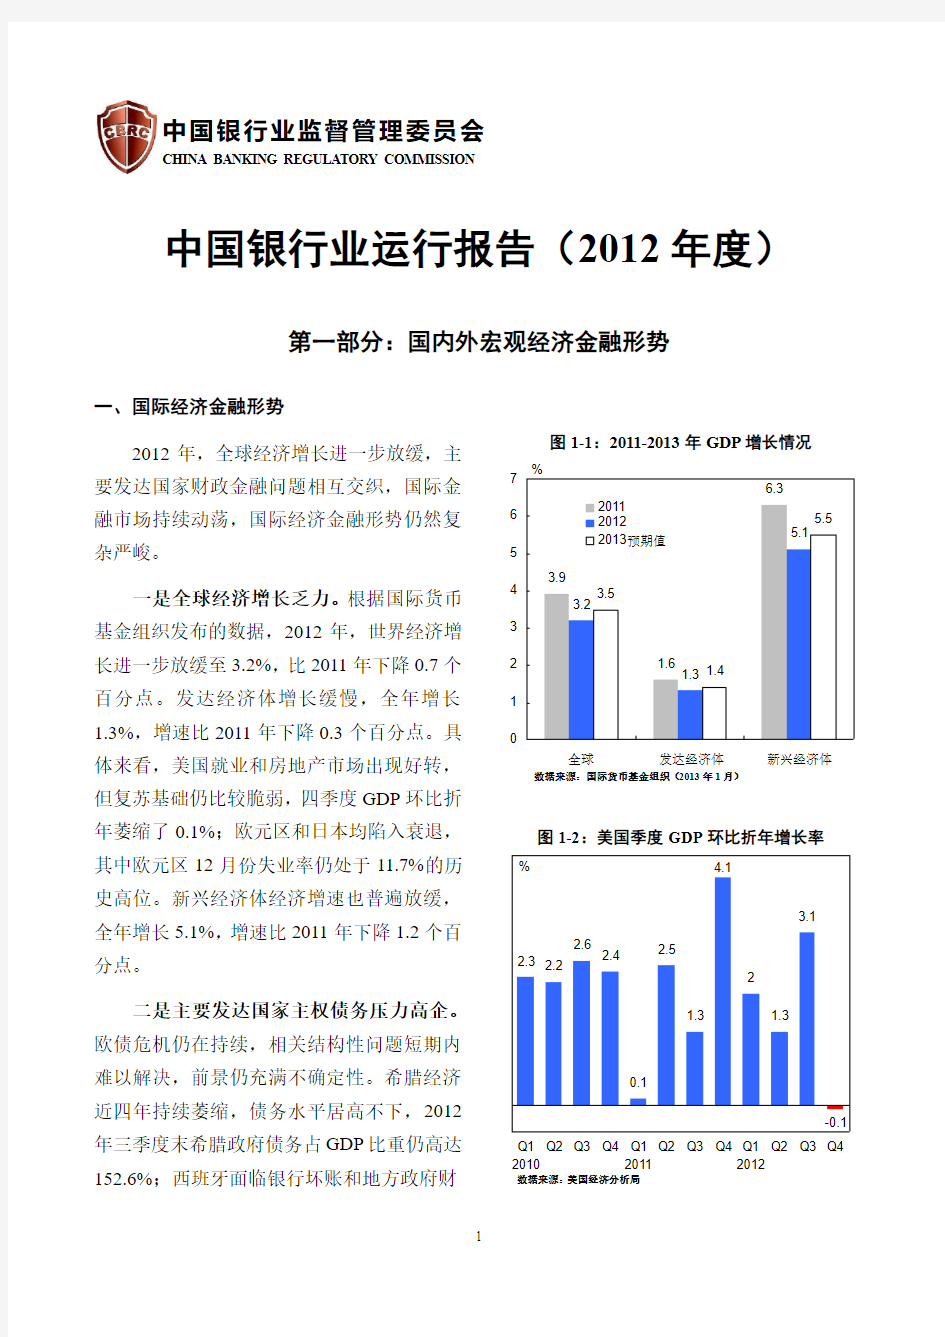 中国银行业运行报告(2012年度)-中国银监会